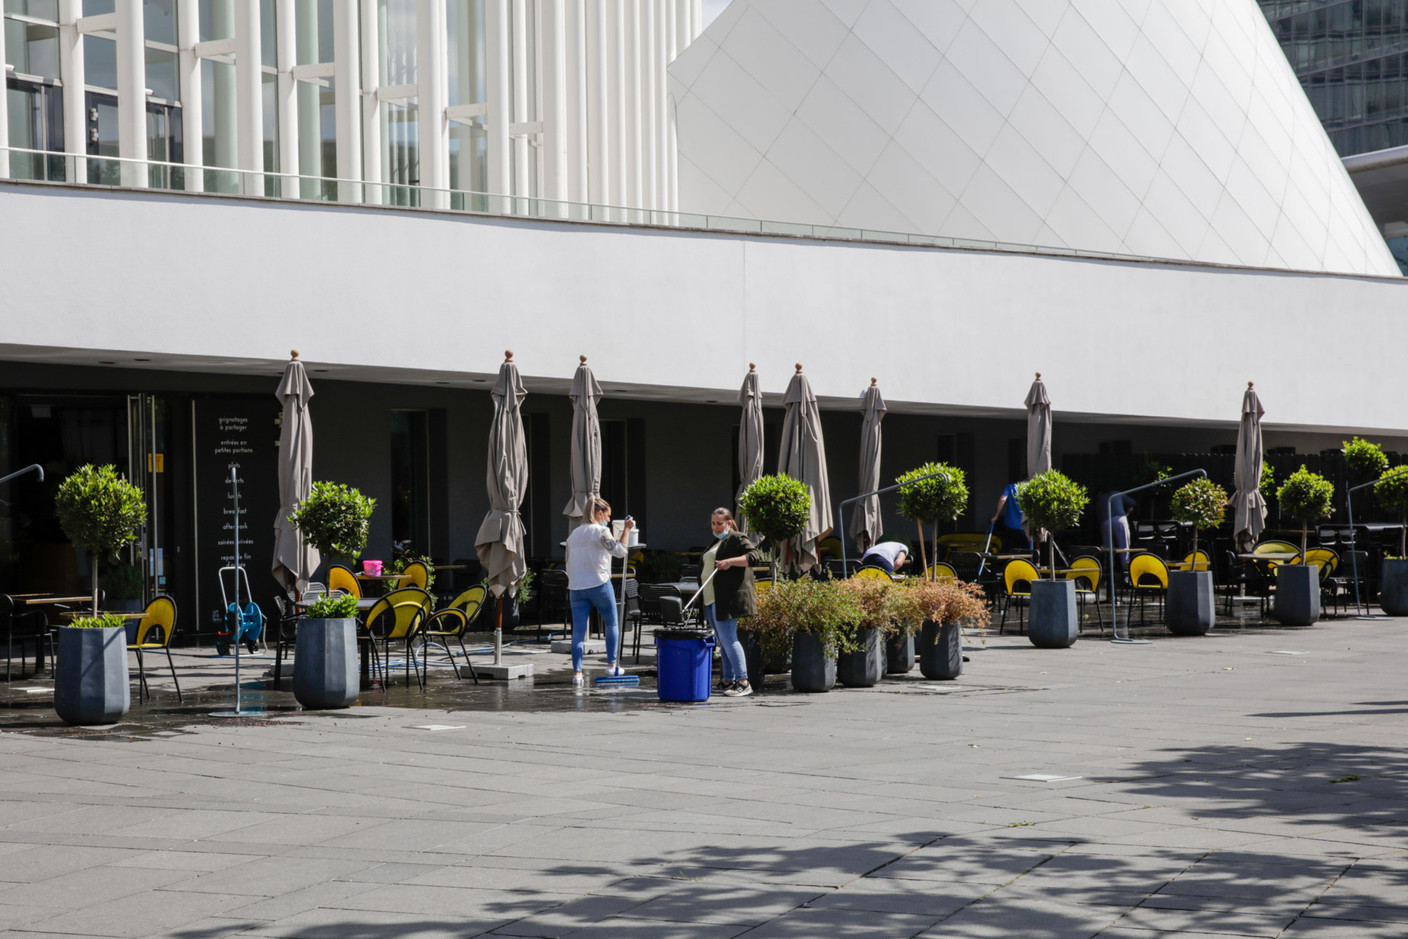 Les équipes du Tempo préparent l’agrandissement de la terrasse sur la place de l’Europe. (Photo: Romain Gamba / Maison Moderne)